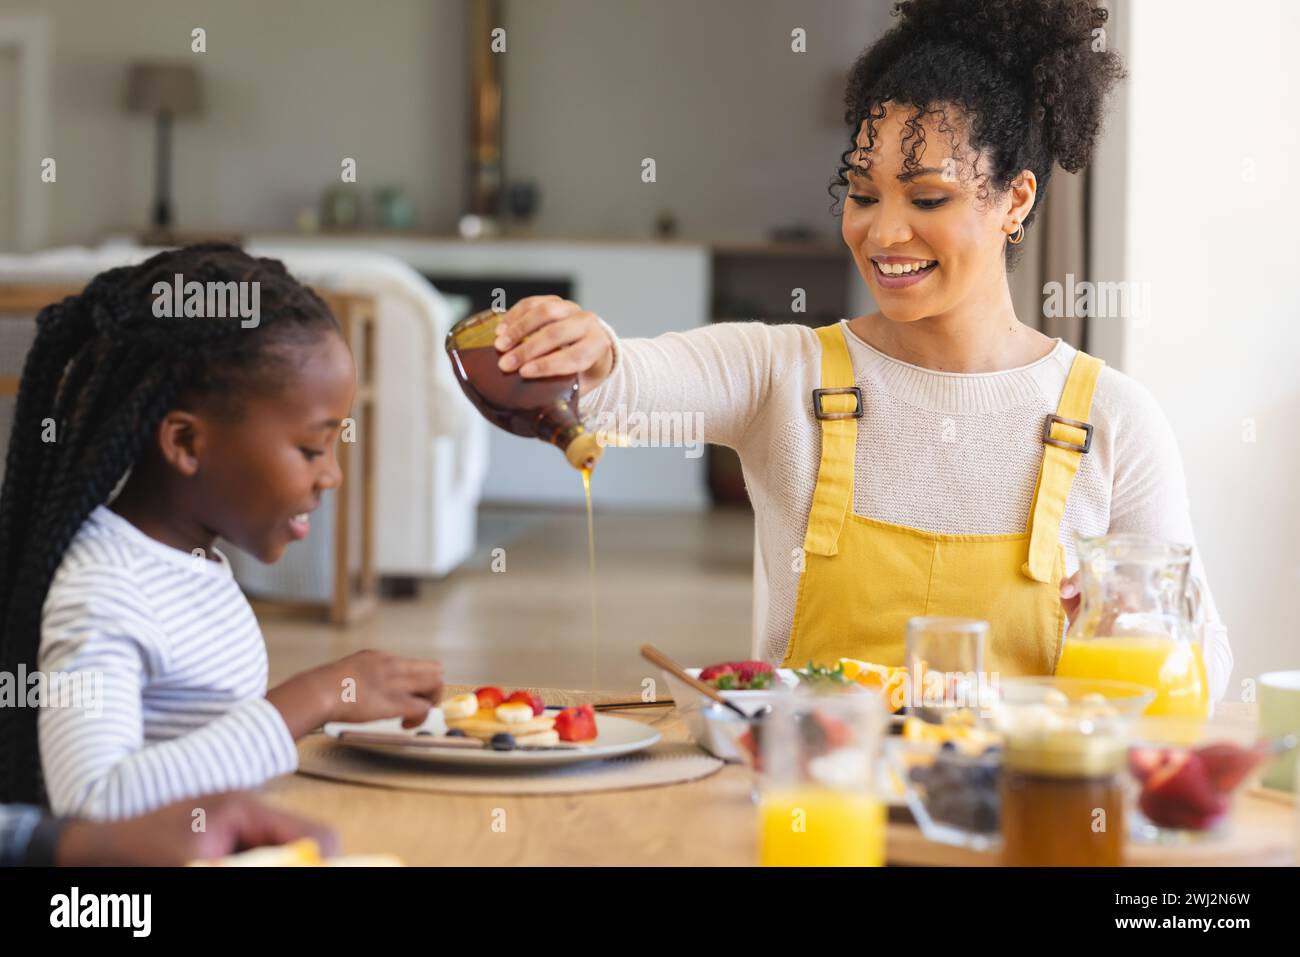 Buona madre afroamericana che versa sciroppo d'acero sulla frutta nella sala da pranzo di casa, copia spazio Foto Stock